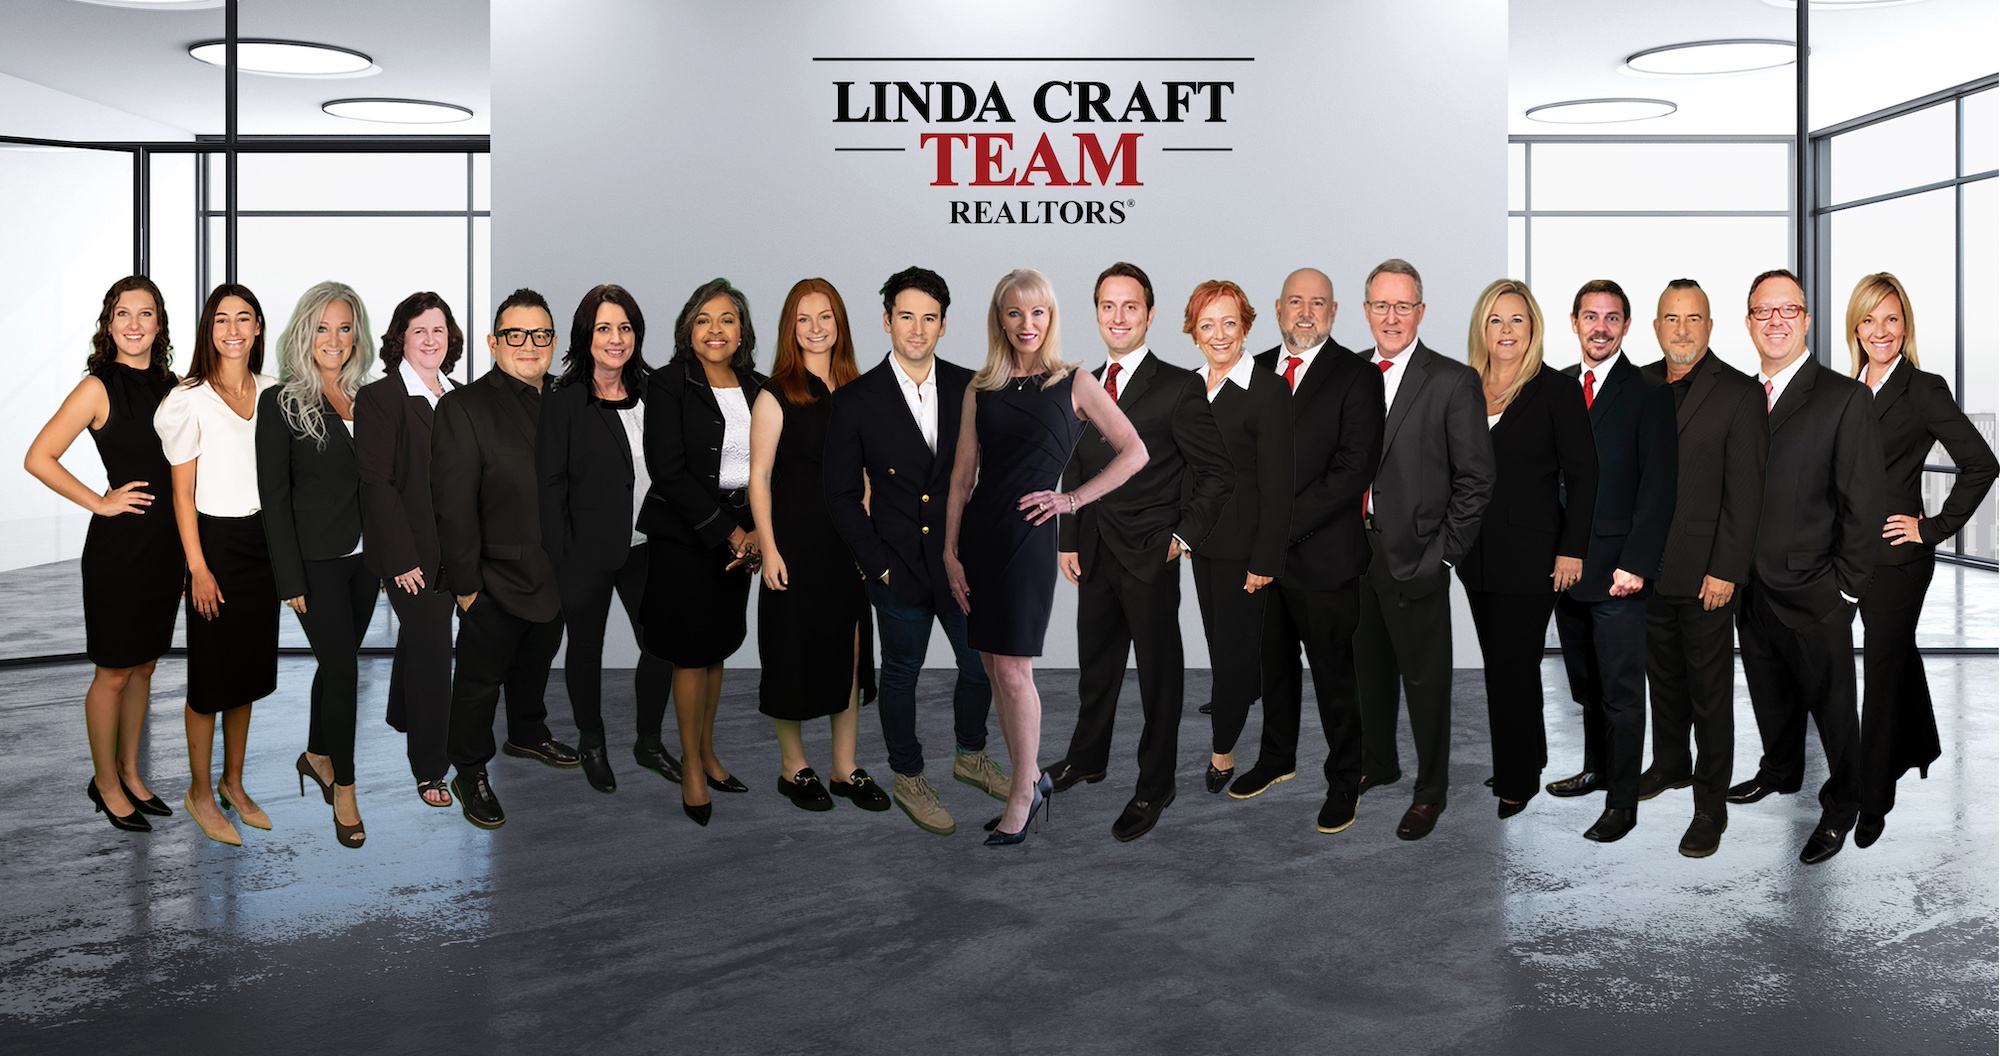 The Linda Craft Team team shot